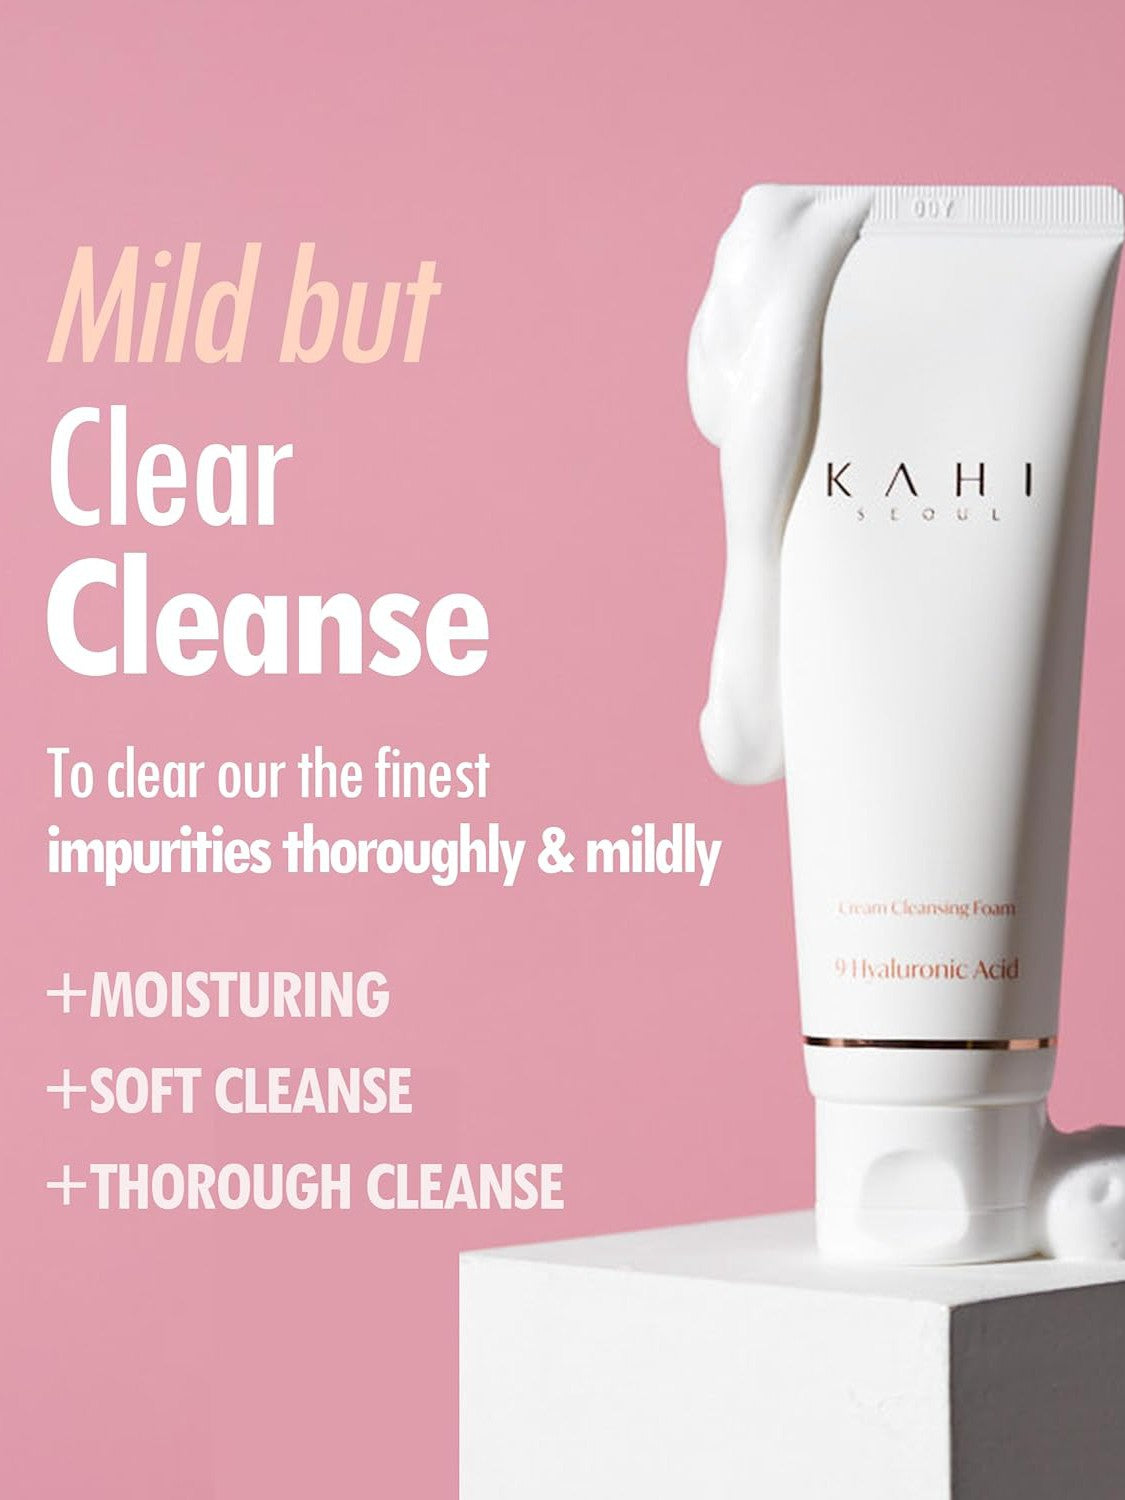 KAHI Seoul Cream Cleansing Foam